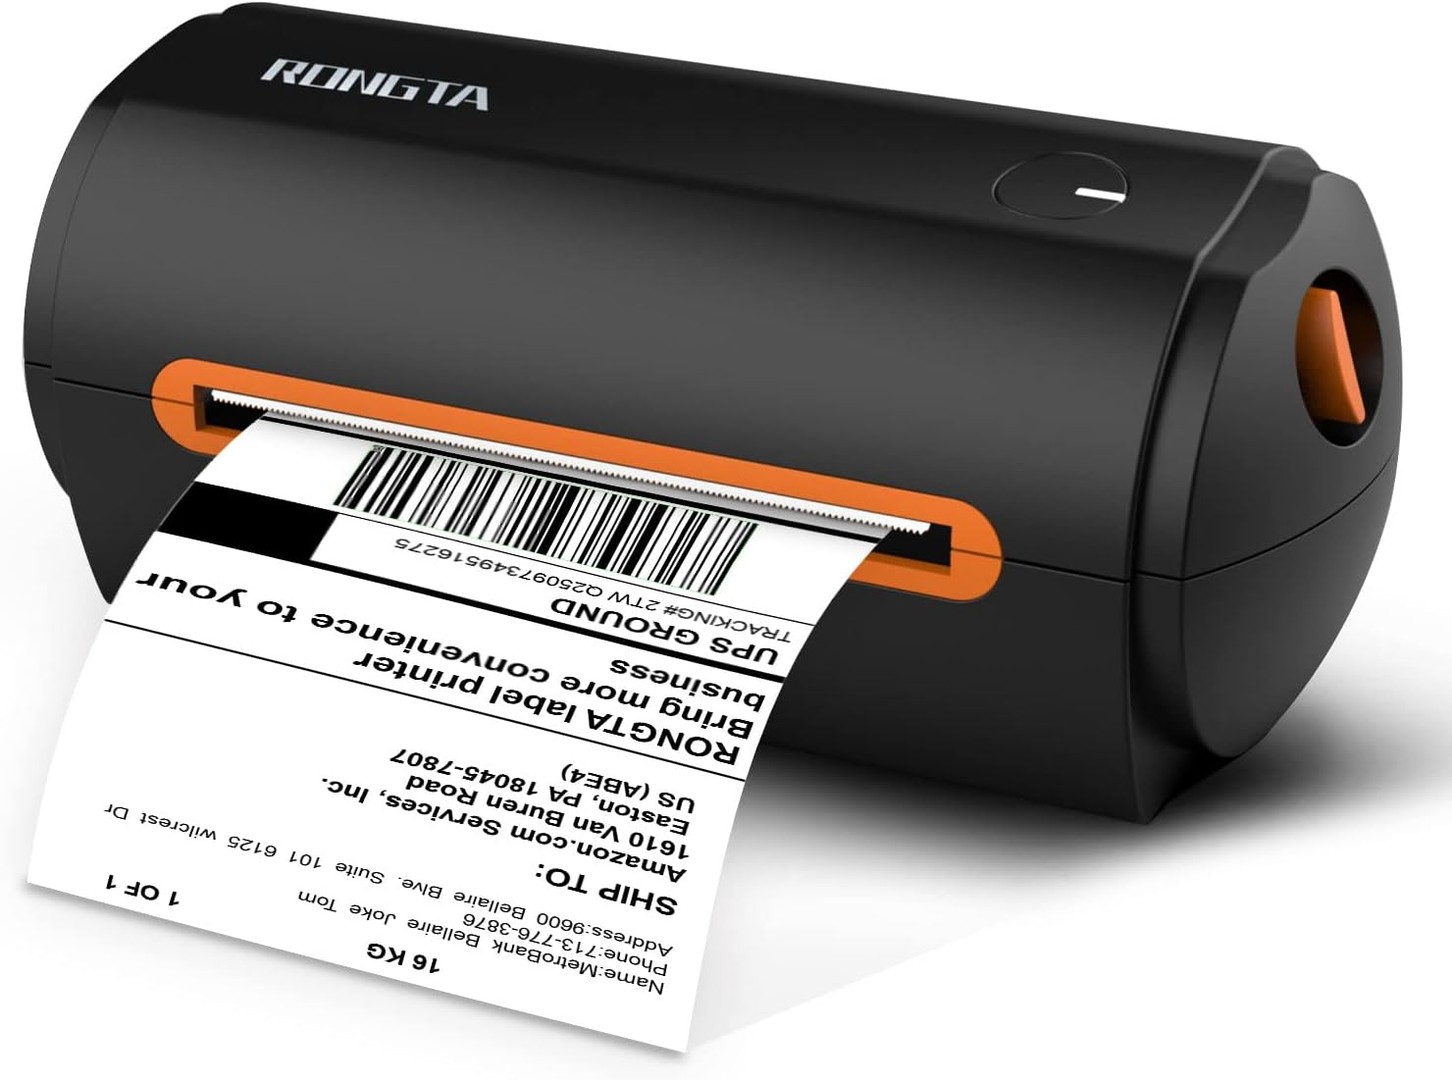 impresoras y scanners - Impresora codigos de barras etiquetas térmicas Rongta 0